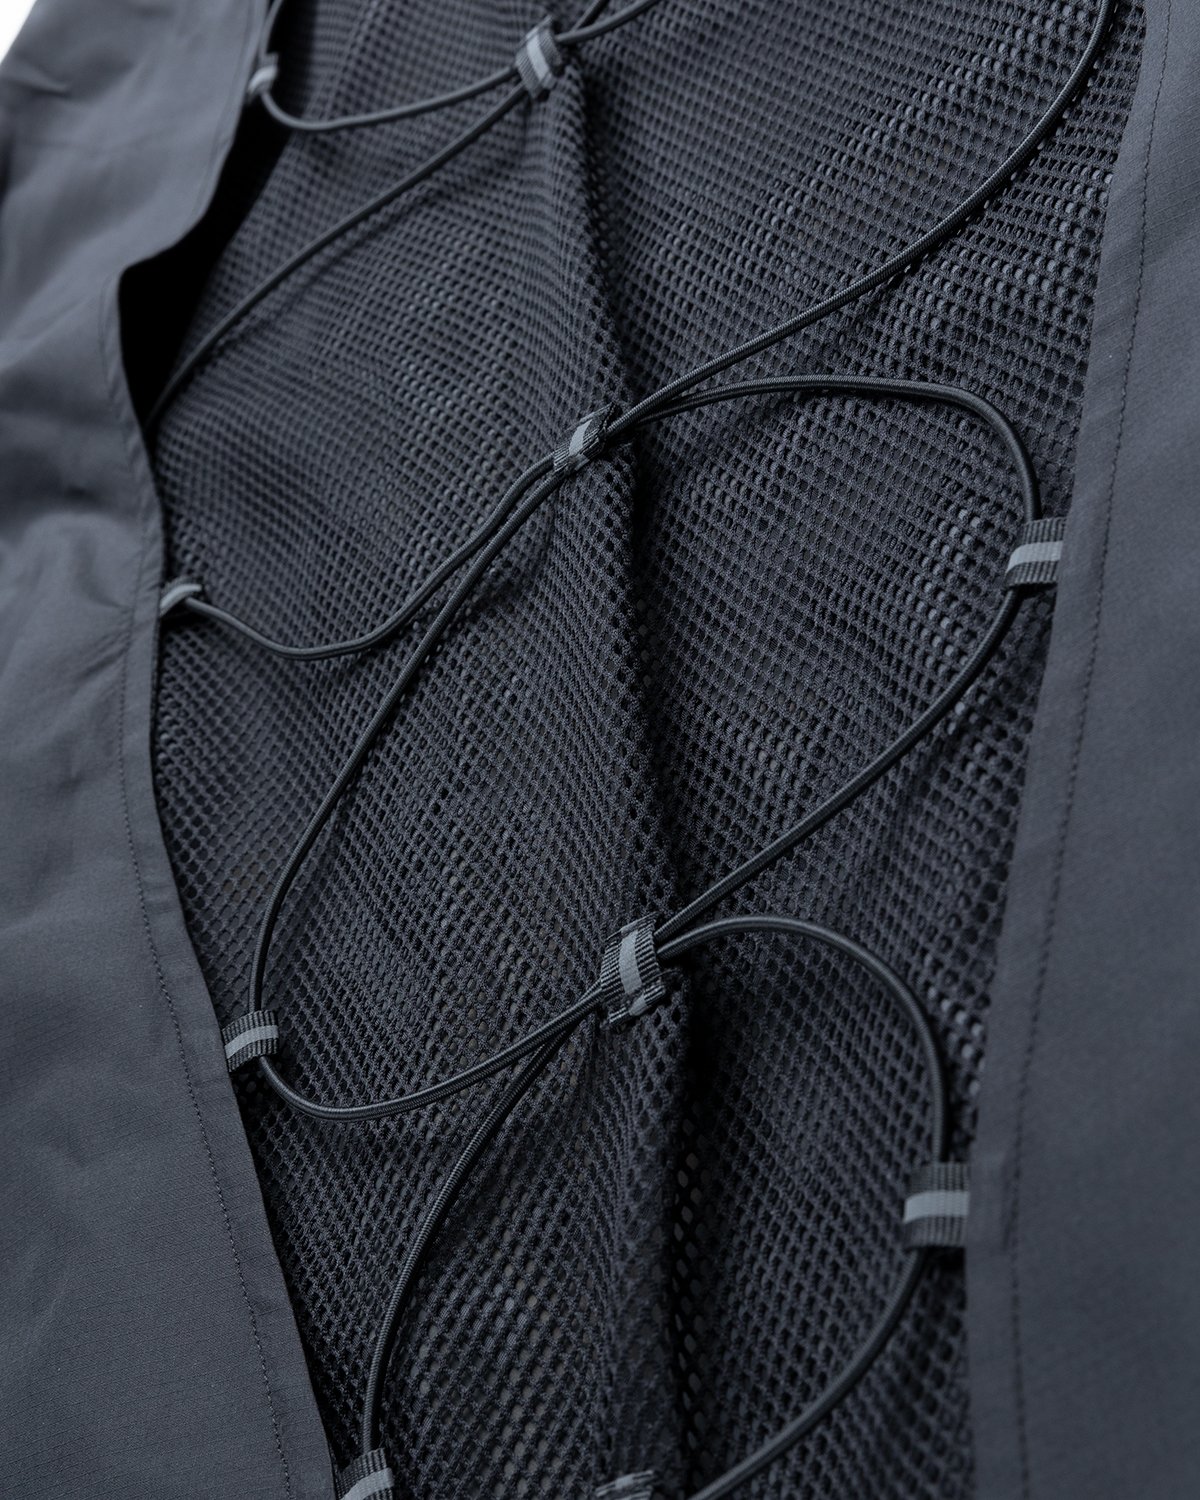 Umbro x Sucux - Zenomorph Jacket Black - Clothing - Black - Image 4